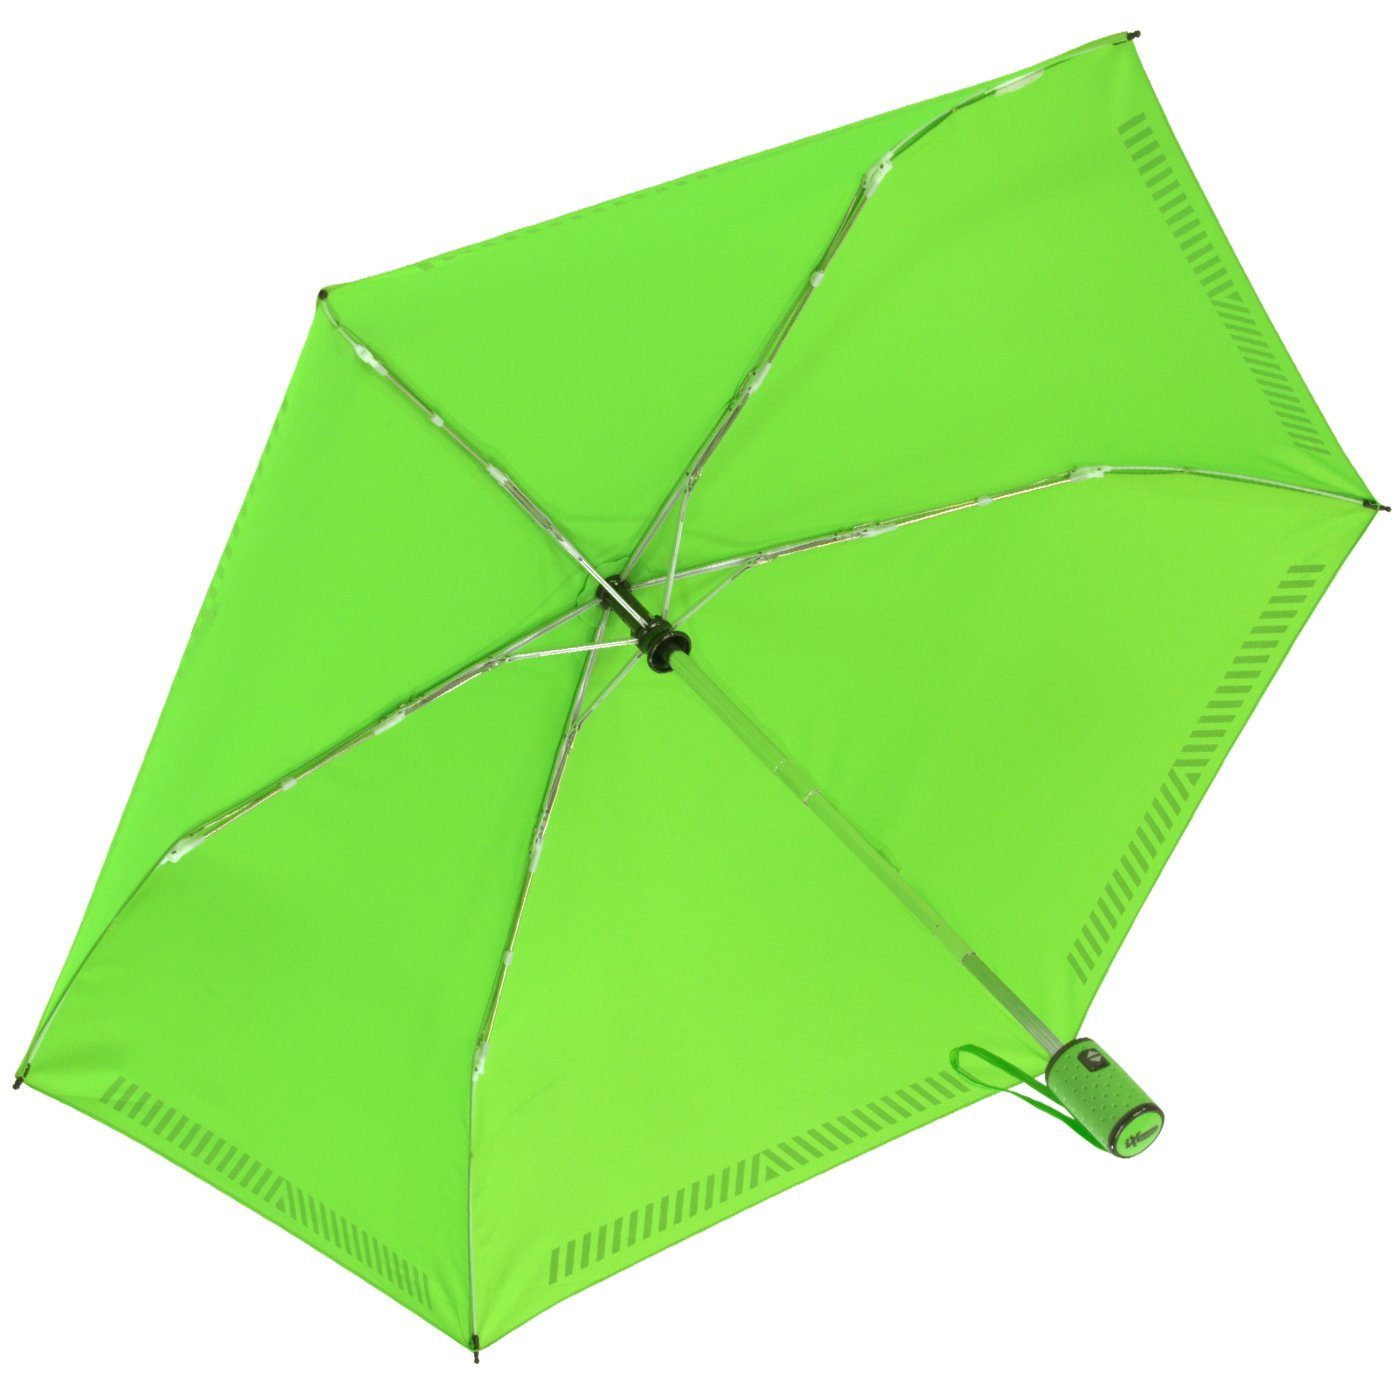 iX-brella Taschenregenschirm Kinderschirm mit Auf-Zu-Automatik, Sicherheit - neon durch grün Reflex-Streifen reflektierend